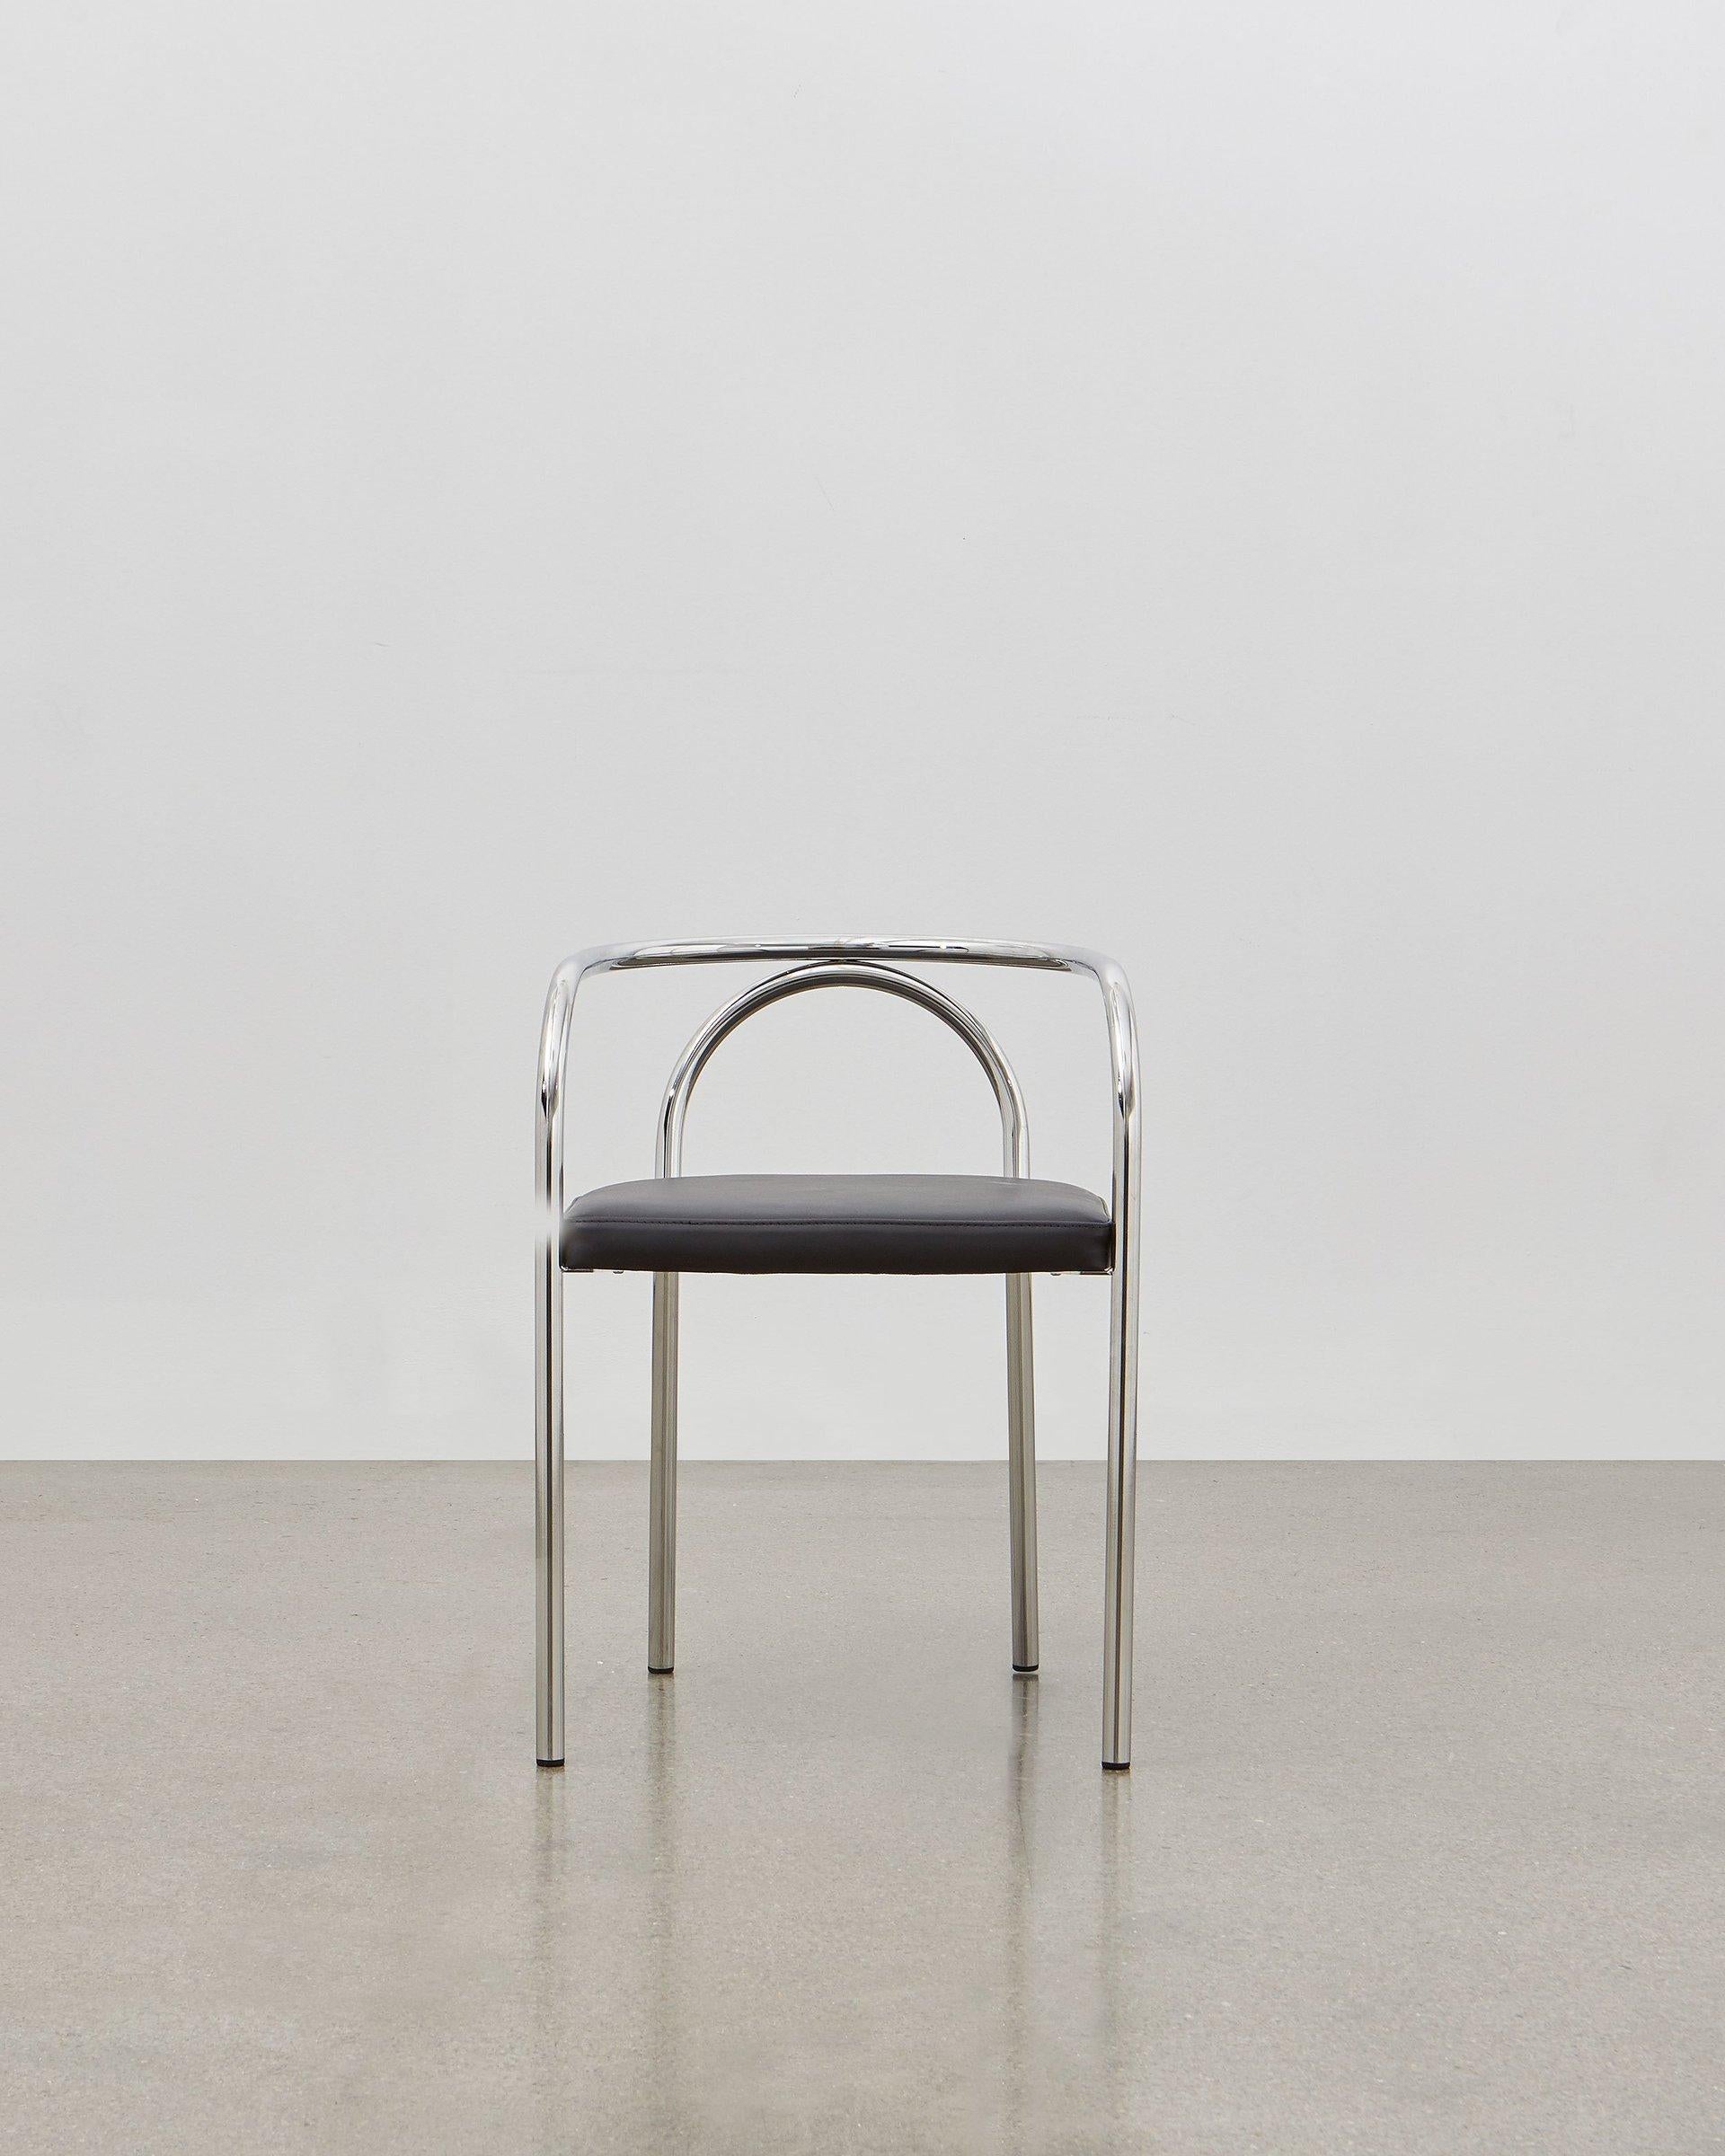 En créant la chaise PH, Poul Henningsen a cherché à réinventer un certain nombre de modèles de meubles classiques qui étaient traditionnellement construits en bois, comme la chaise 